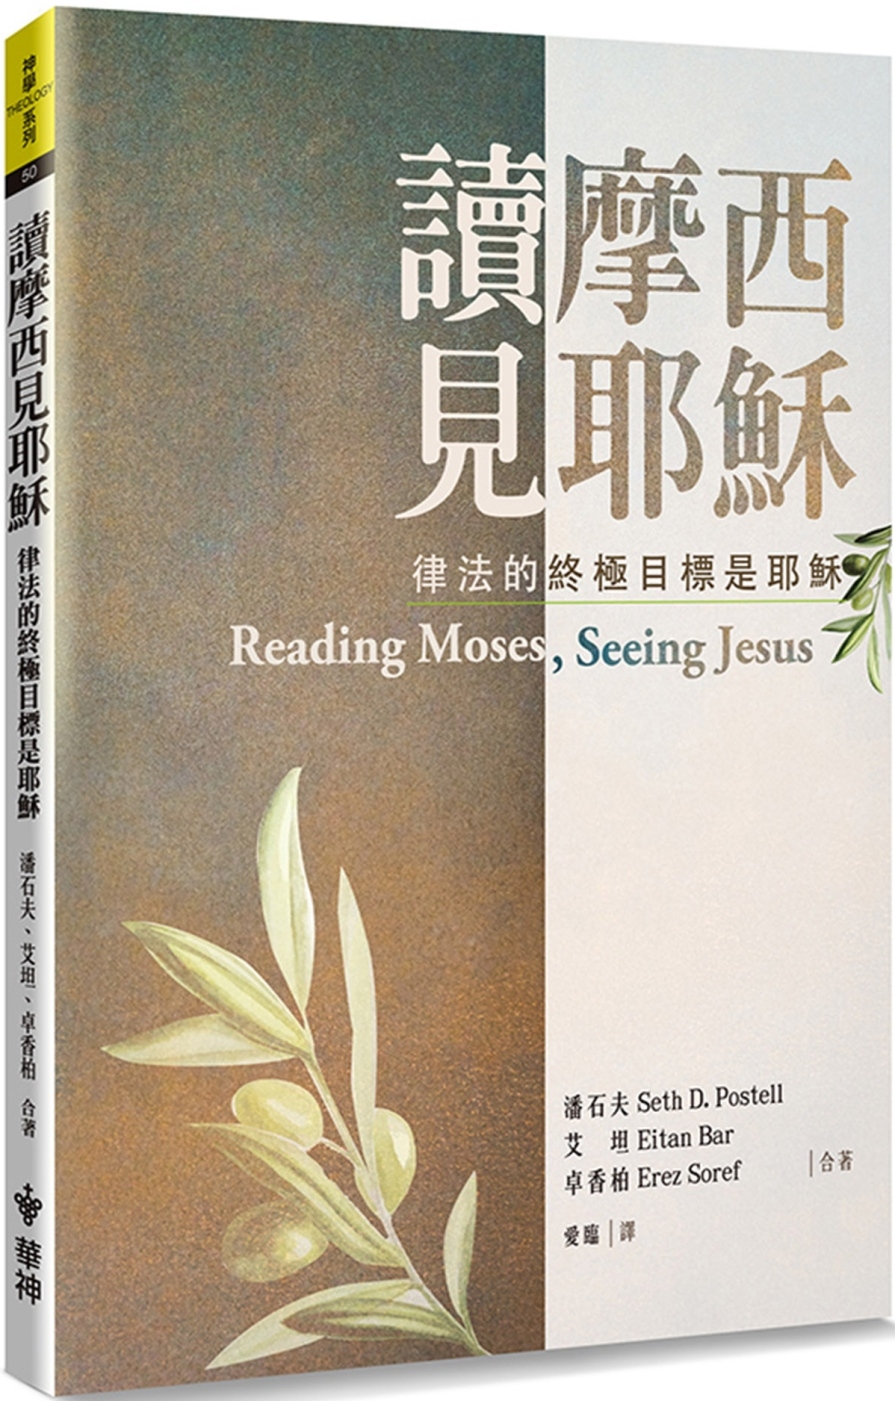 讀摩西見耶穌(2版)：律法的終極目標是耶穌